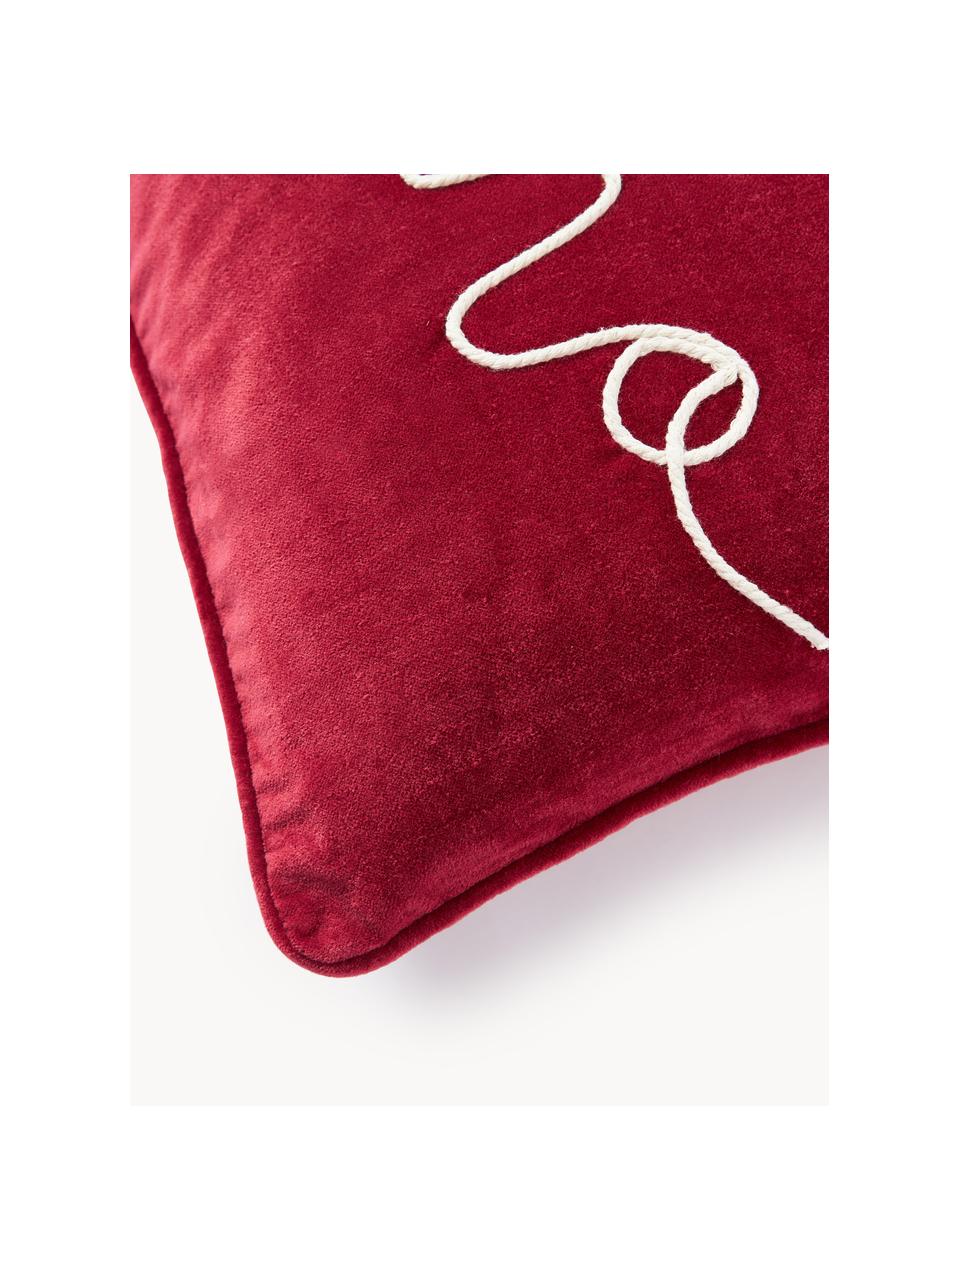 Funda de cojín de terciopelo bordada Hohoho, Terciopelo (100% algodón), Rojo, An 30 x L 50 cm